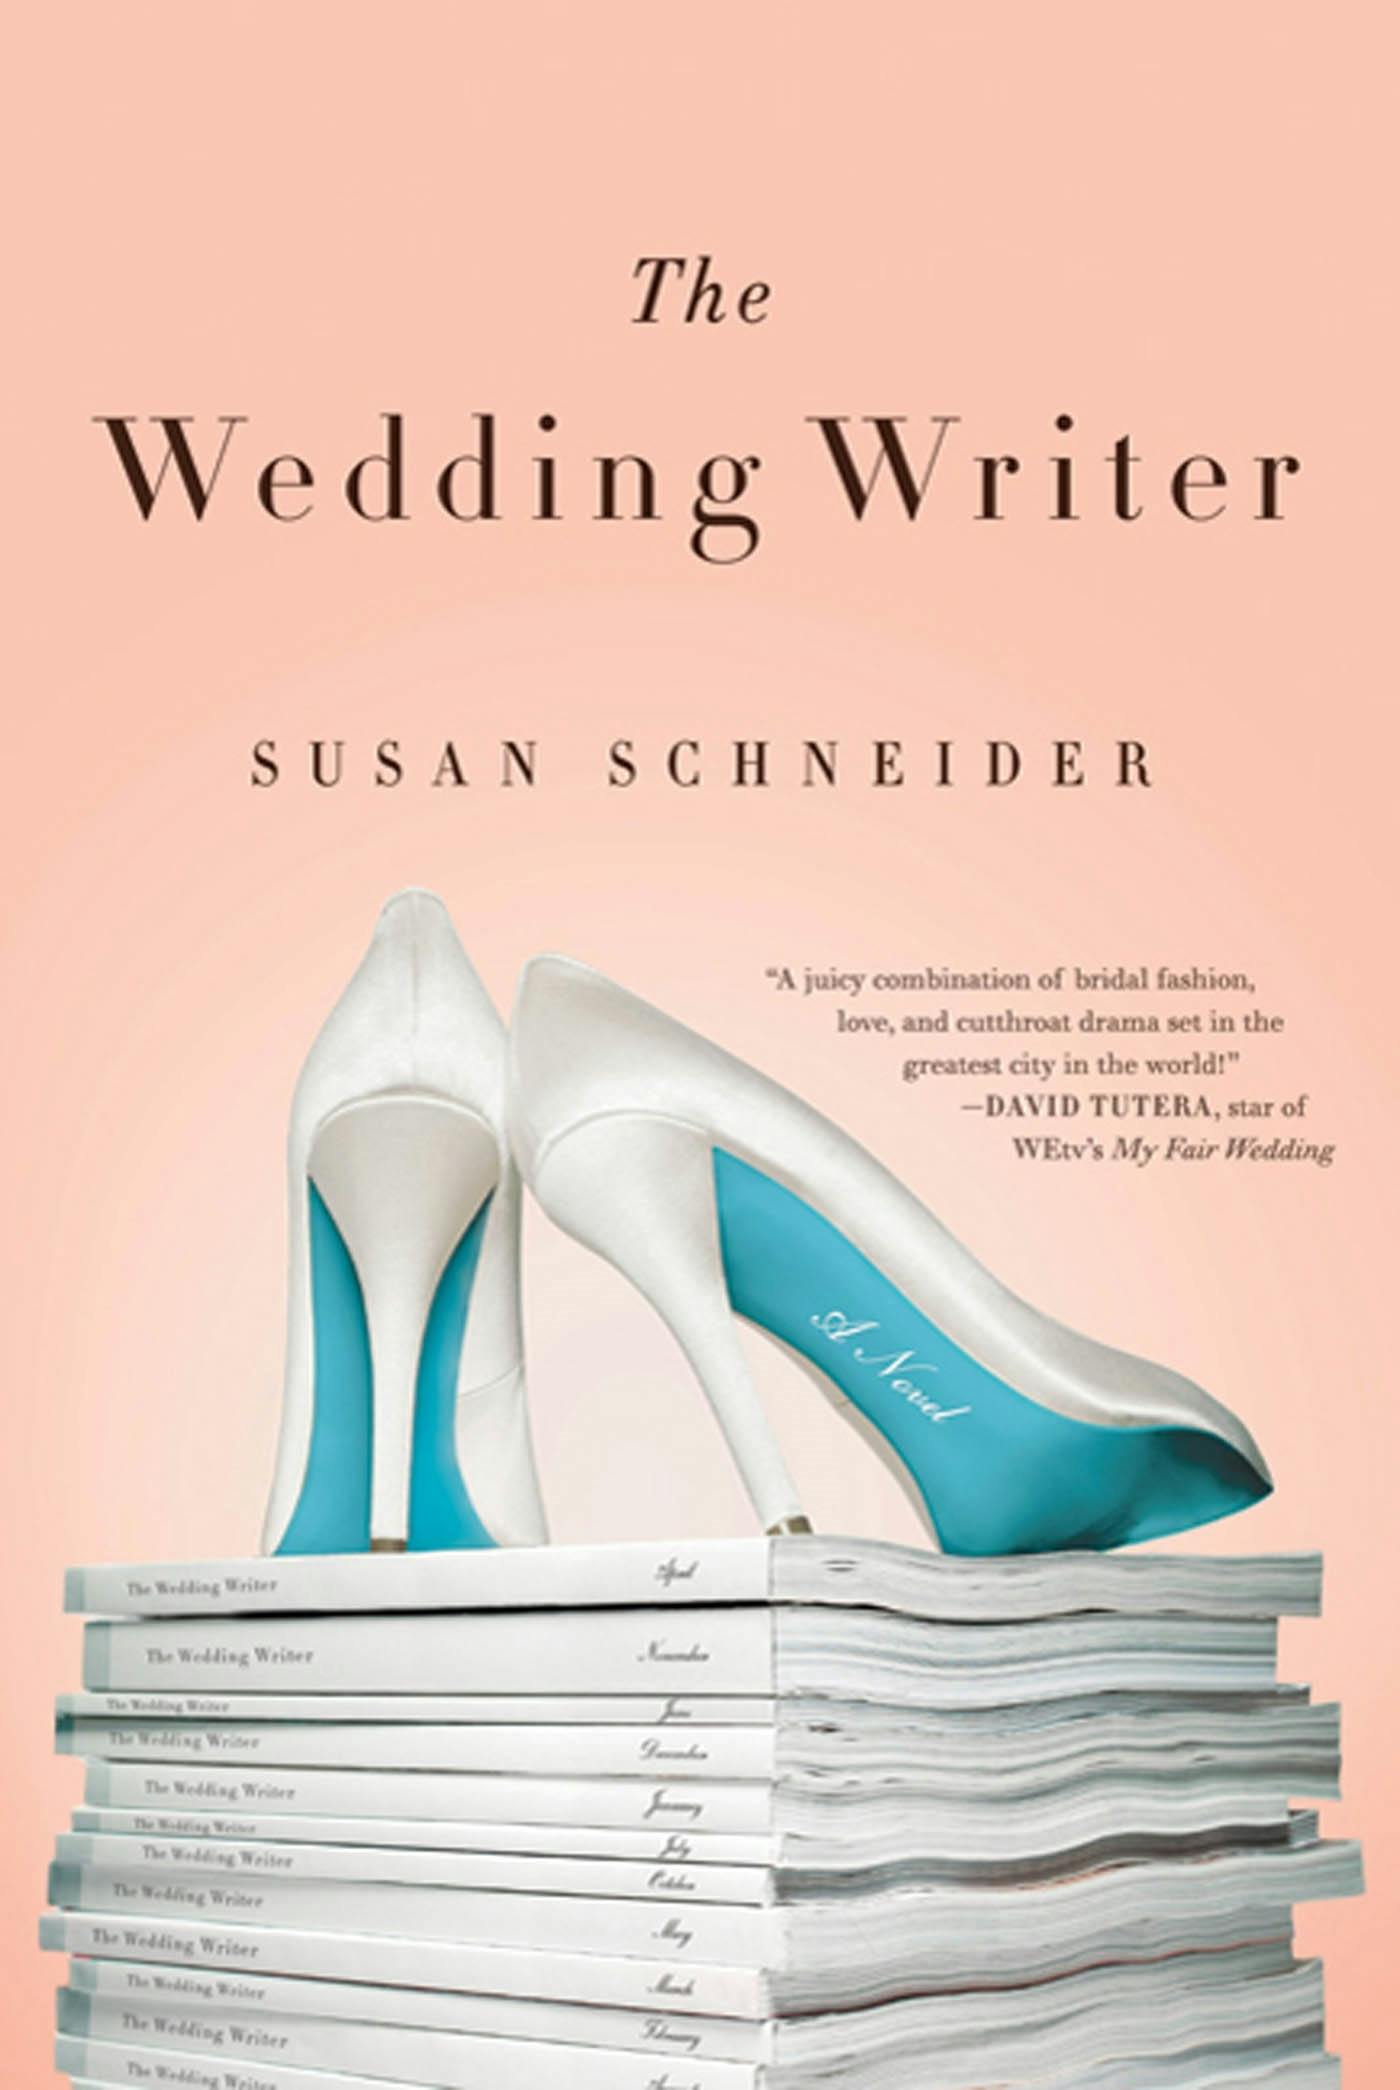 The Wedding Writer image image